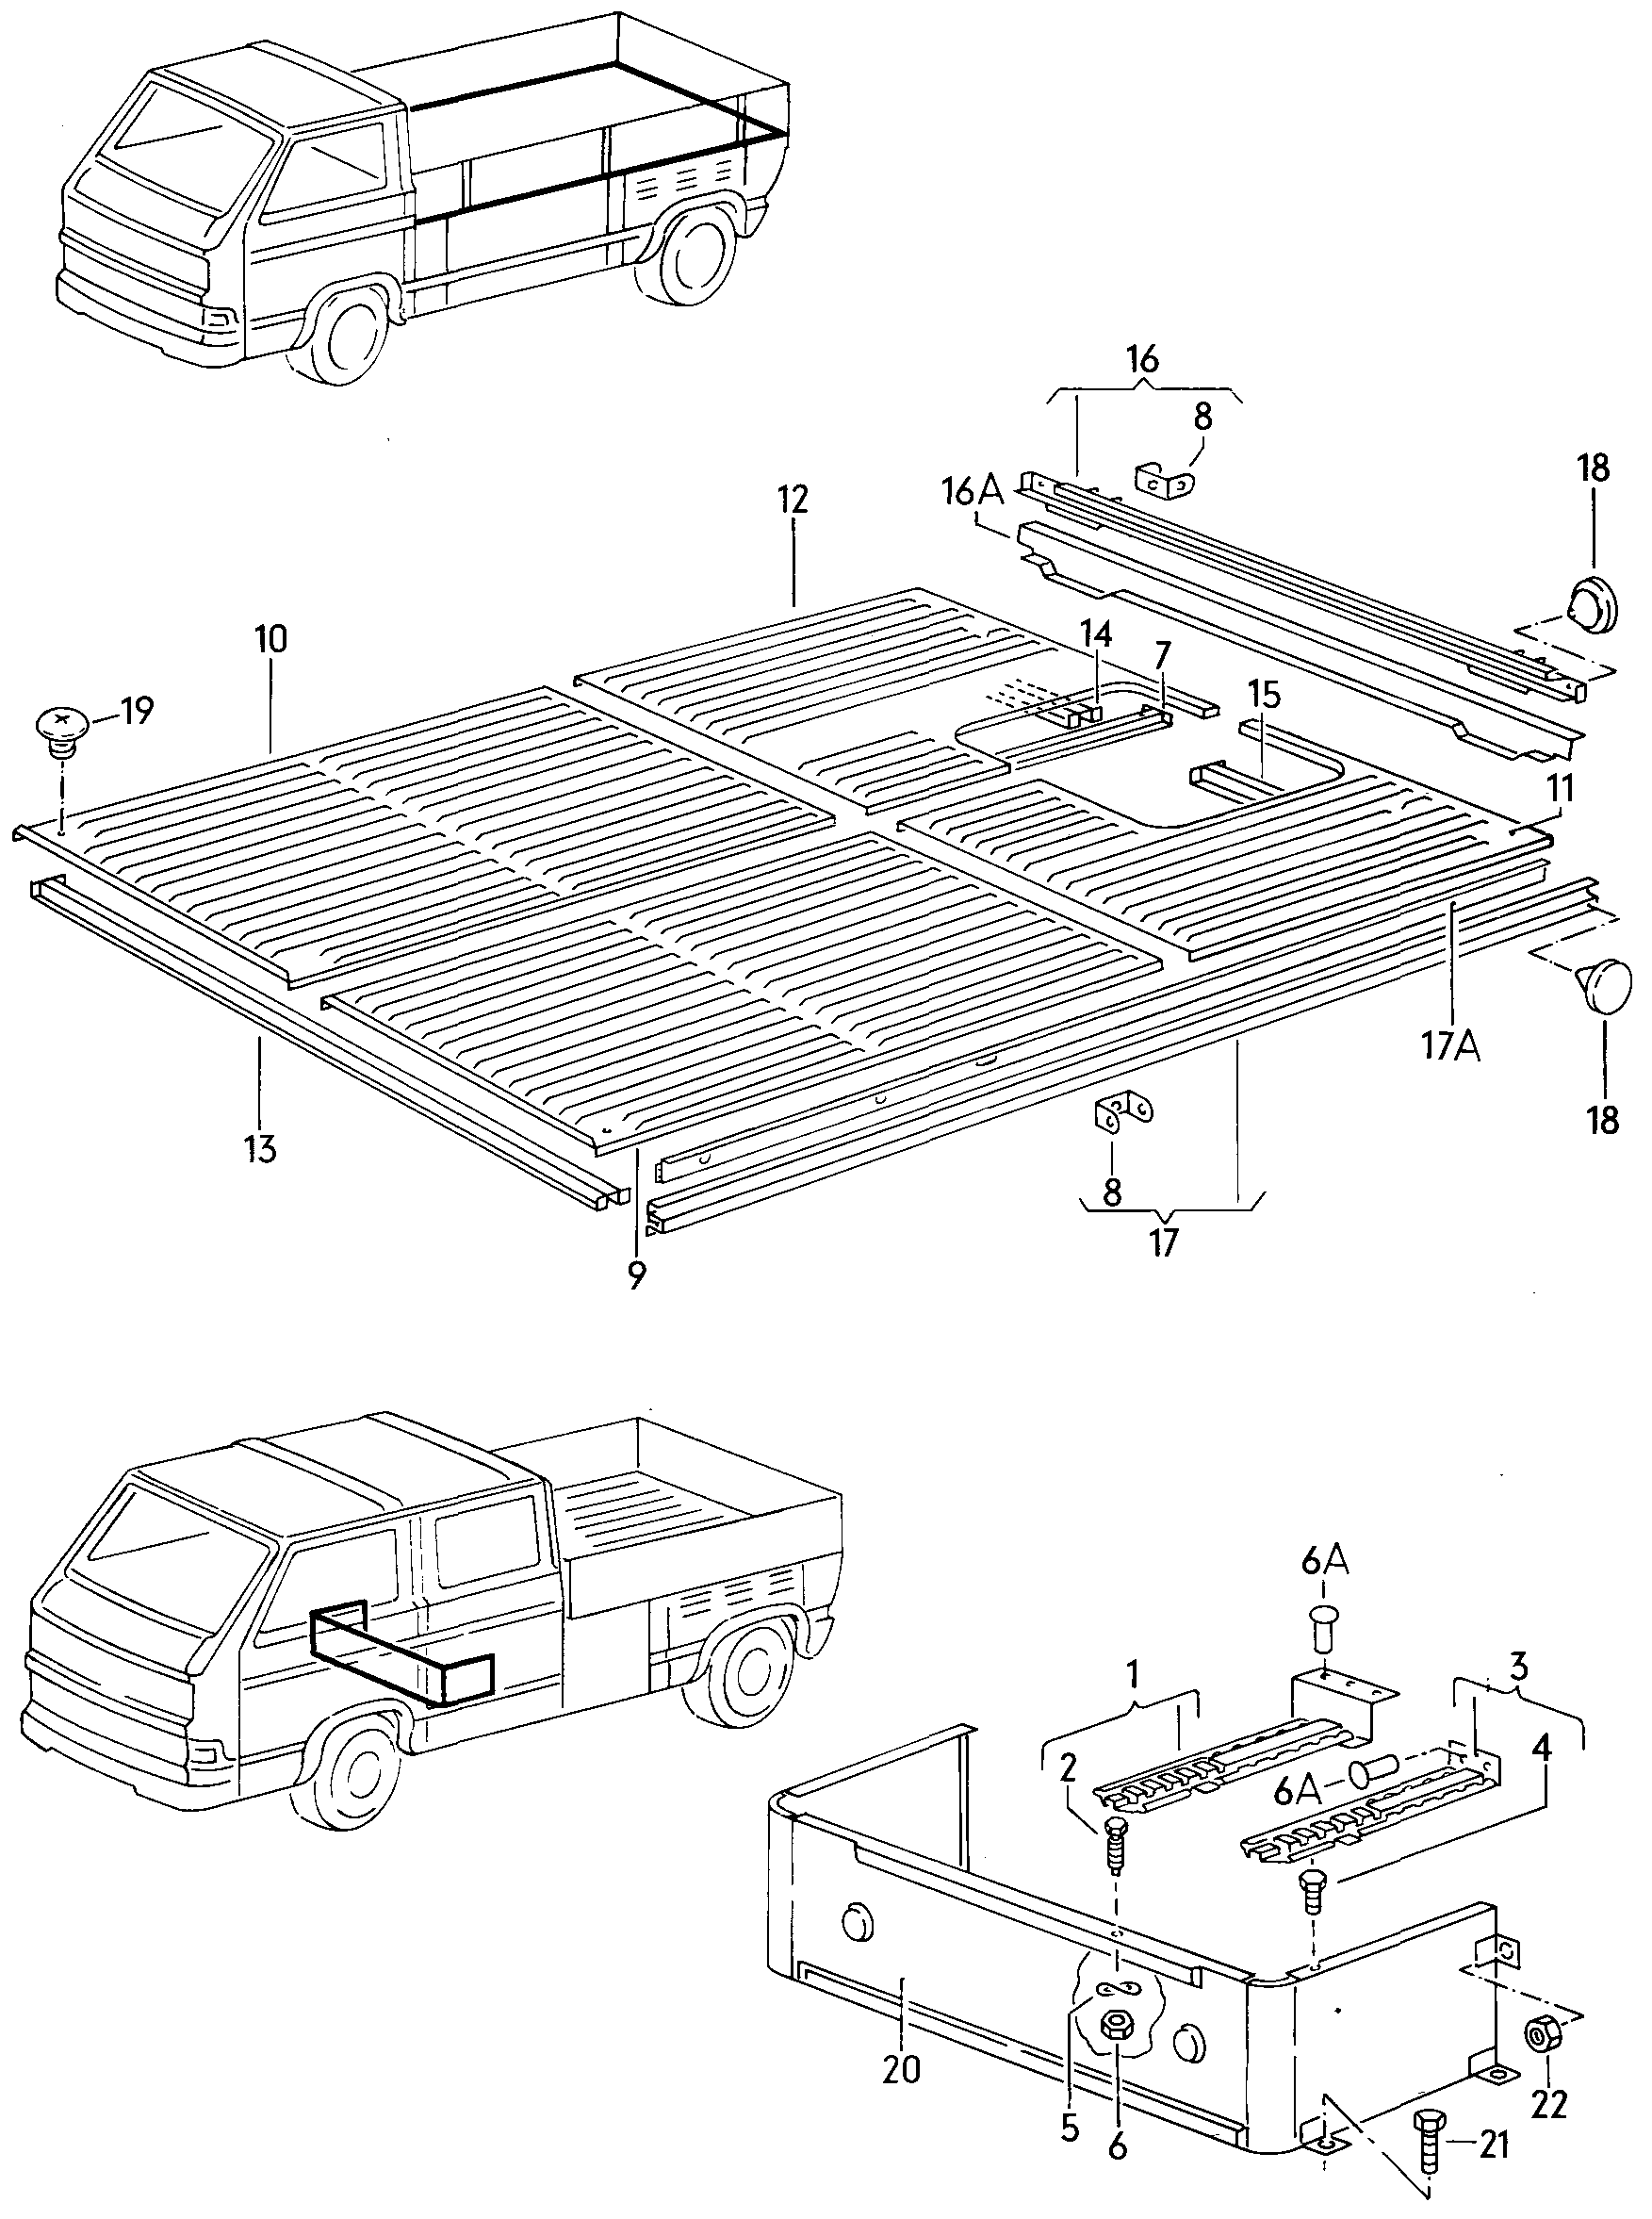 Bodenblech, Sitzkasten,<br>Längs- und Querträger  - Typ 2/syncro - t2